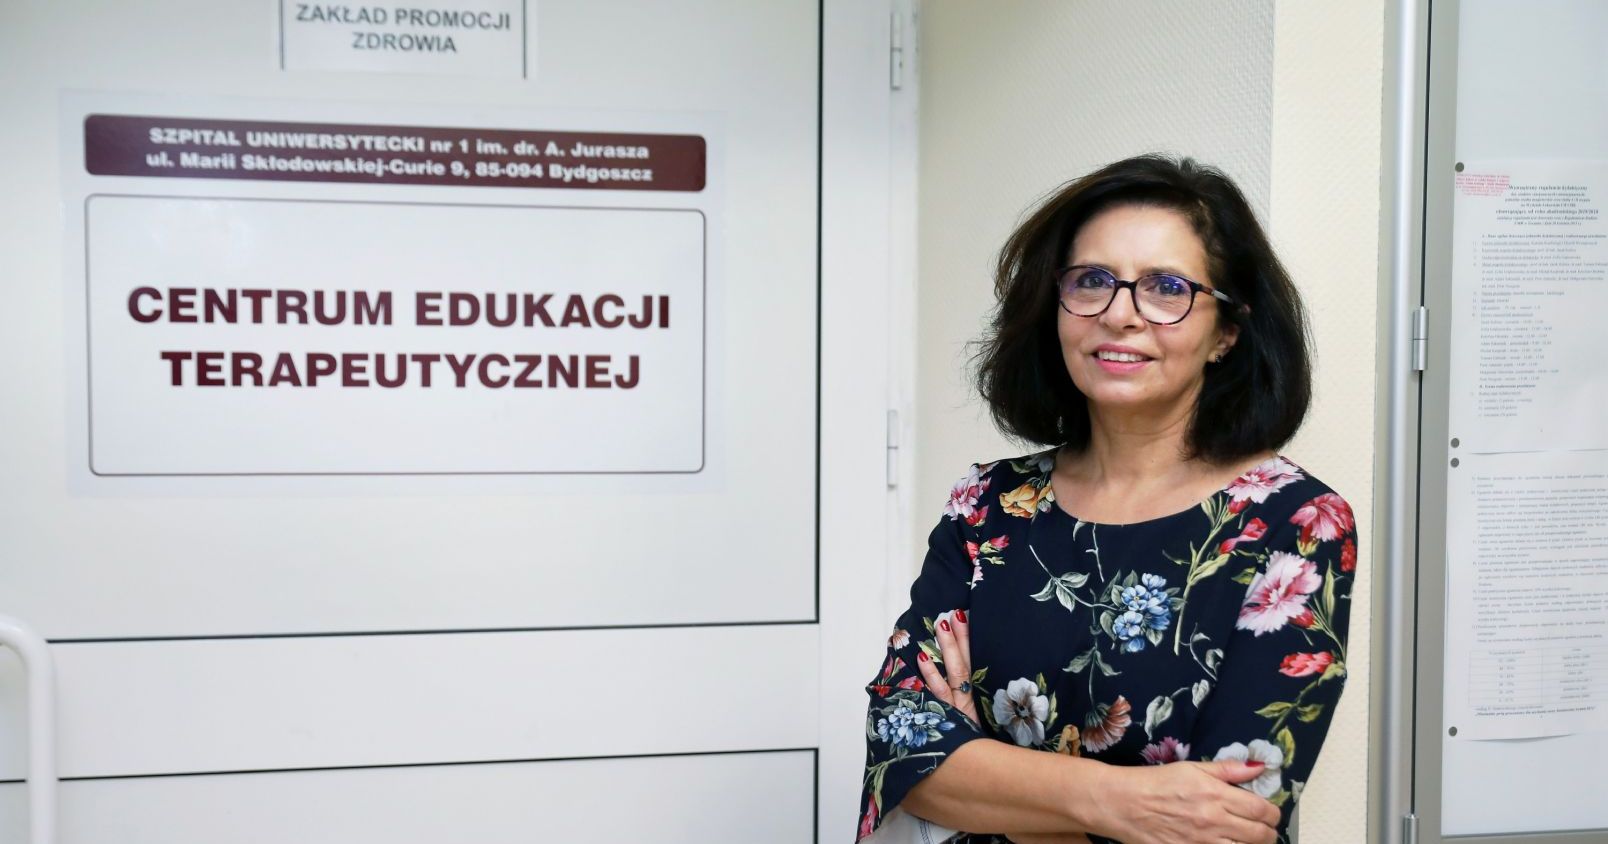 Prof. dr hab. Aldona Kubica Prof. dr hab. Aldona Kubica stoi przy drzwiach z napisem Centrum Edukacji Terapeutycznej